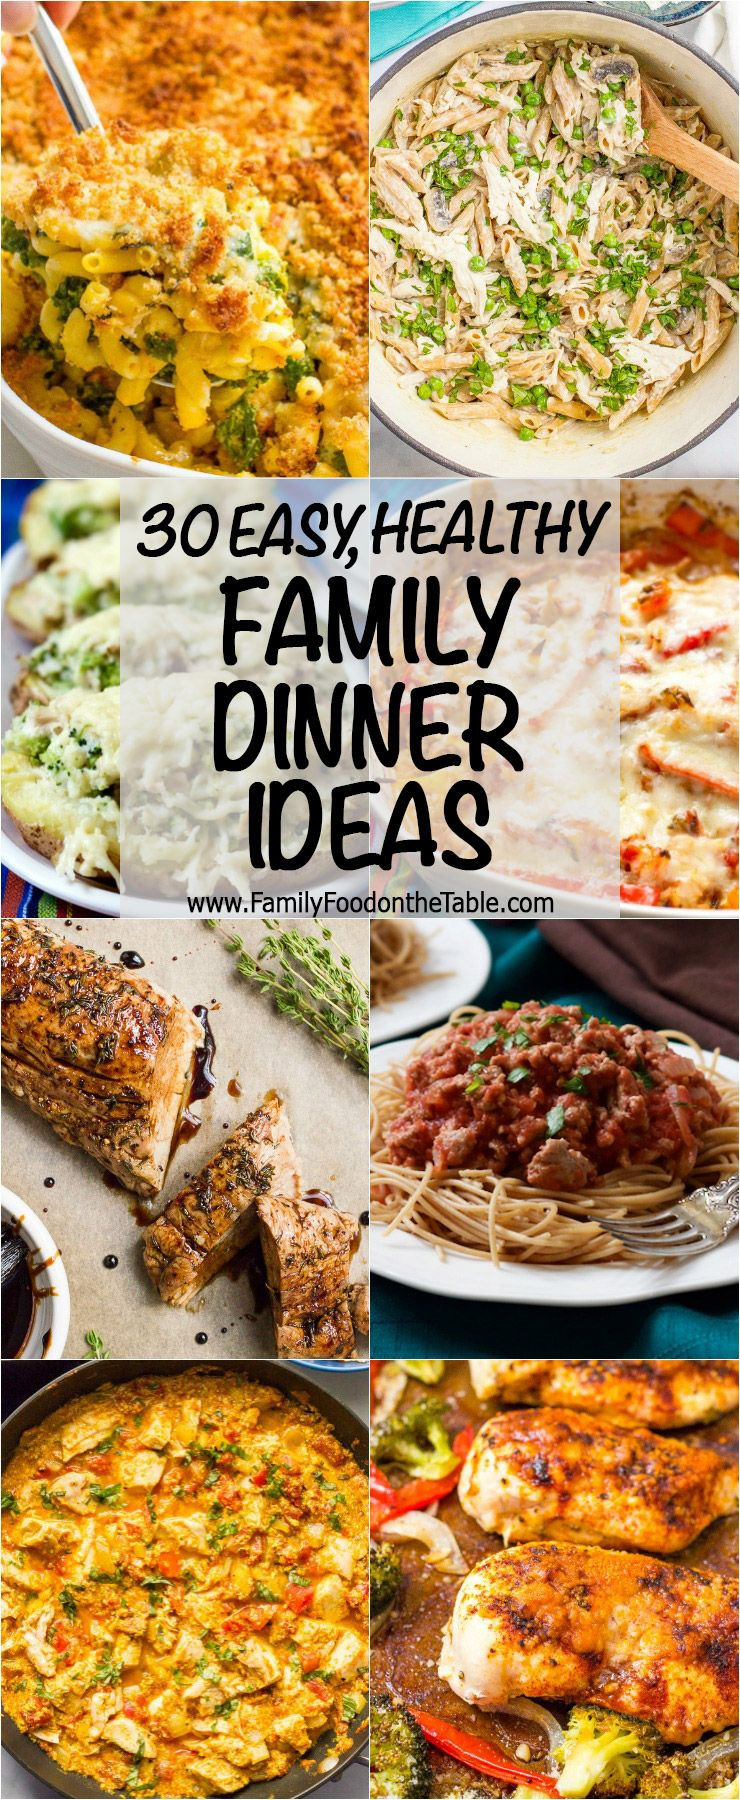 Valentine'S Dinner Ideas For Family
 30 easy healthy family dinner ideas